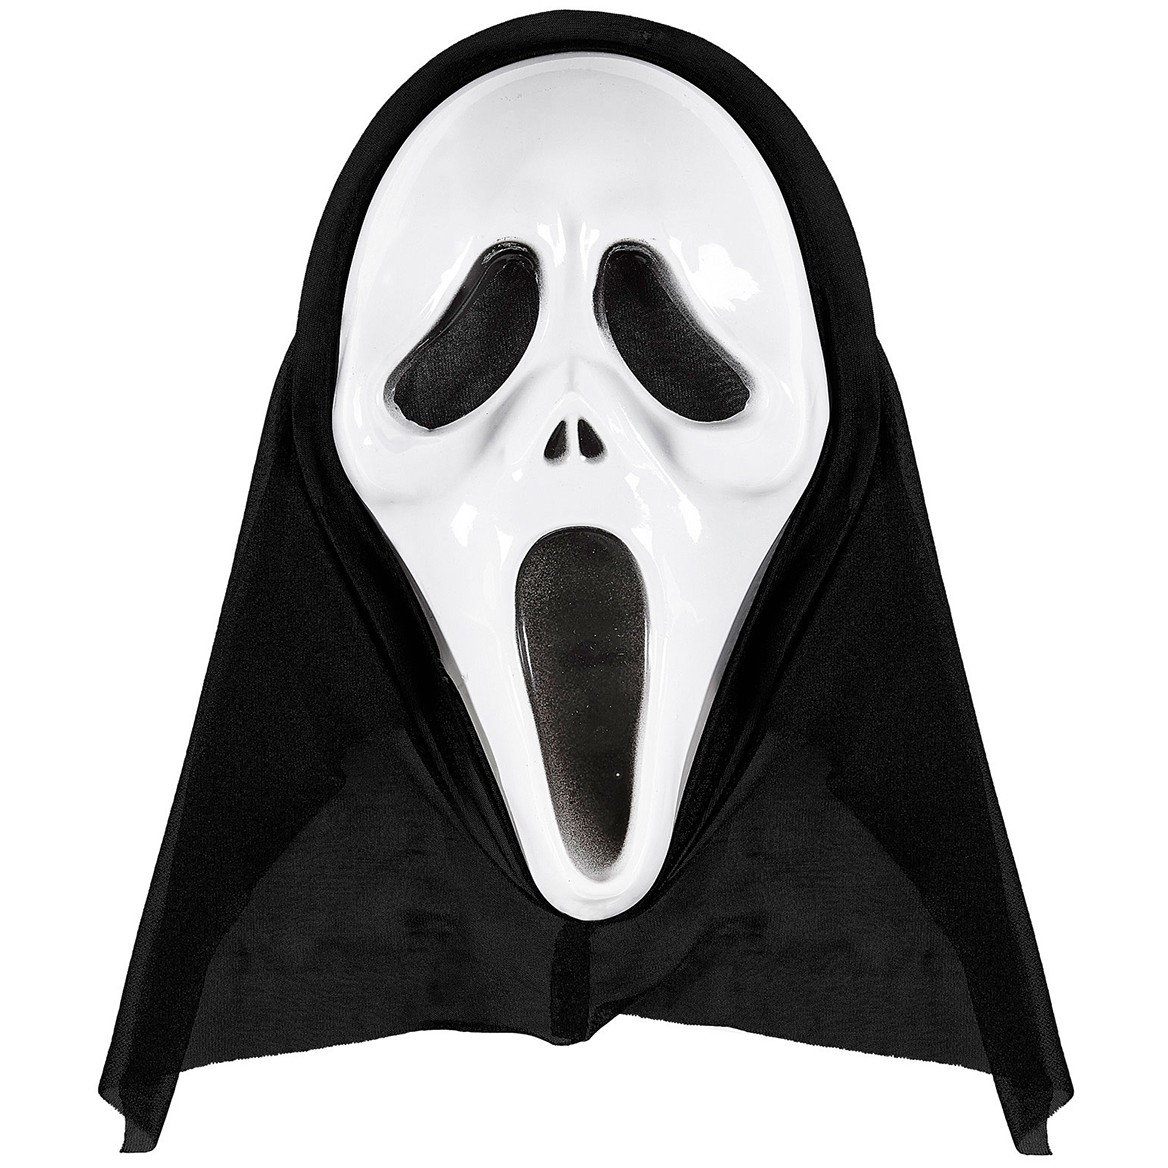 ghost maske kaufen